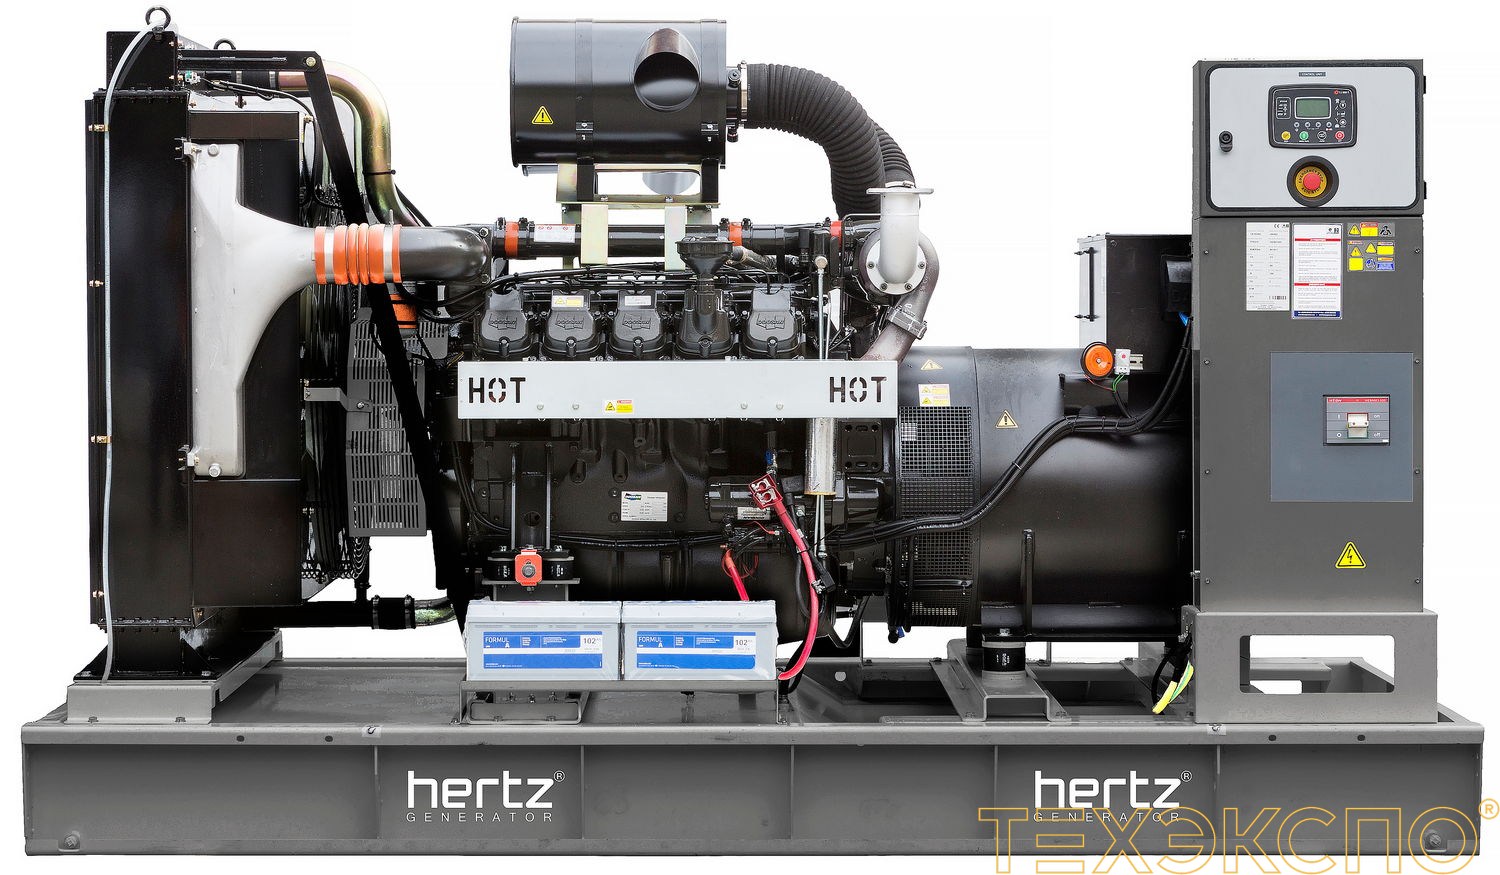 HERTZ HG633DL - ДЭС 460 кВт в Санкт-Петербурге за 9 383 591 рублей | Дизельная электростанция в Техэкспо